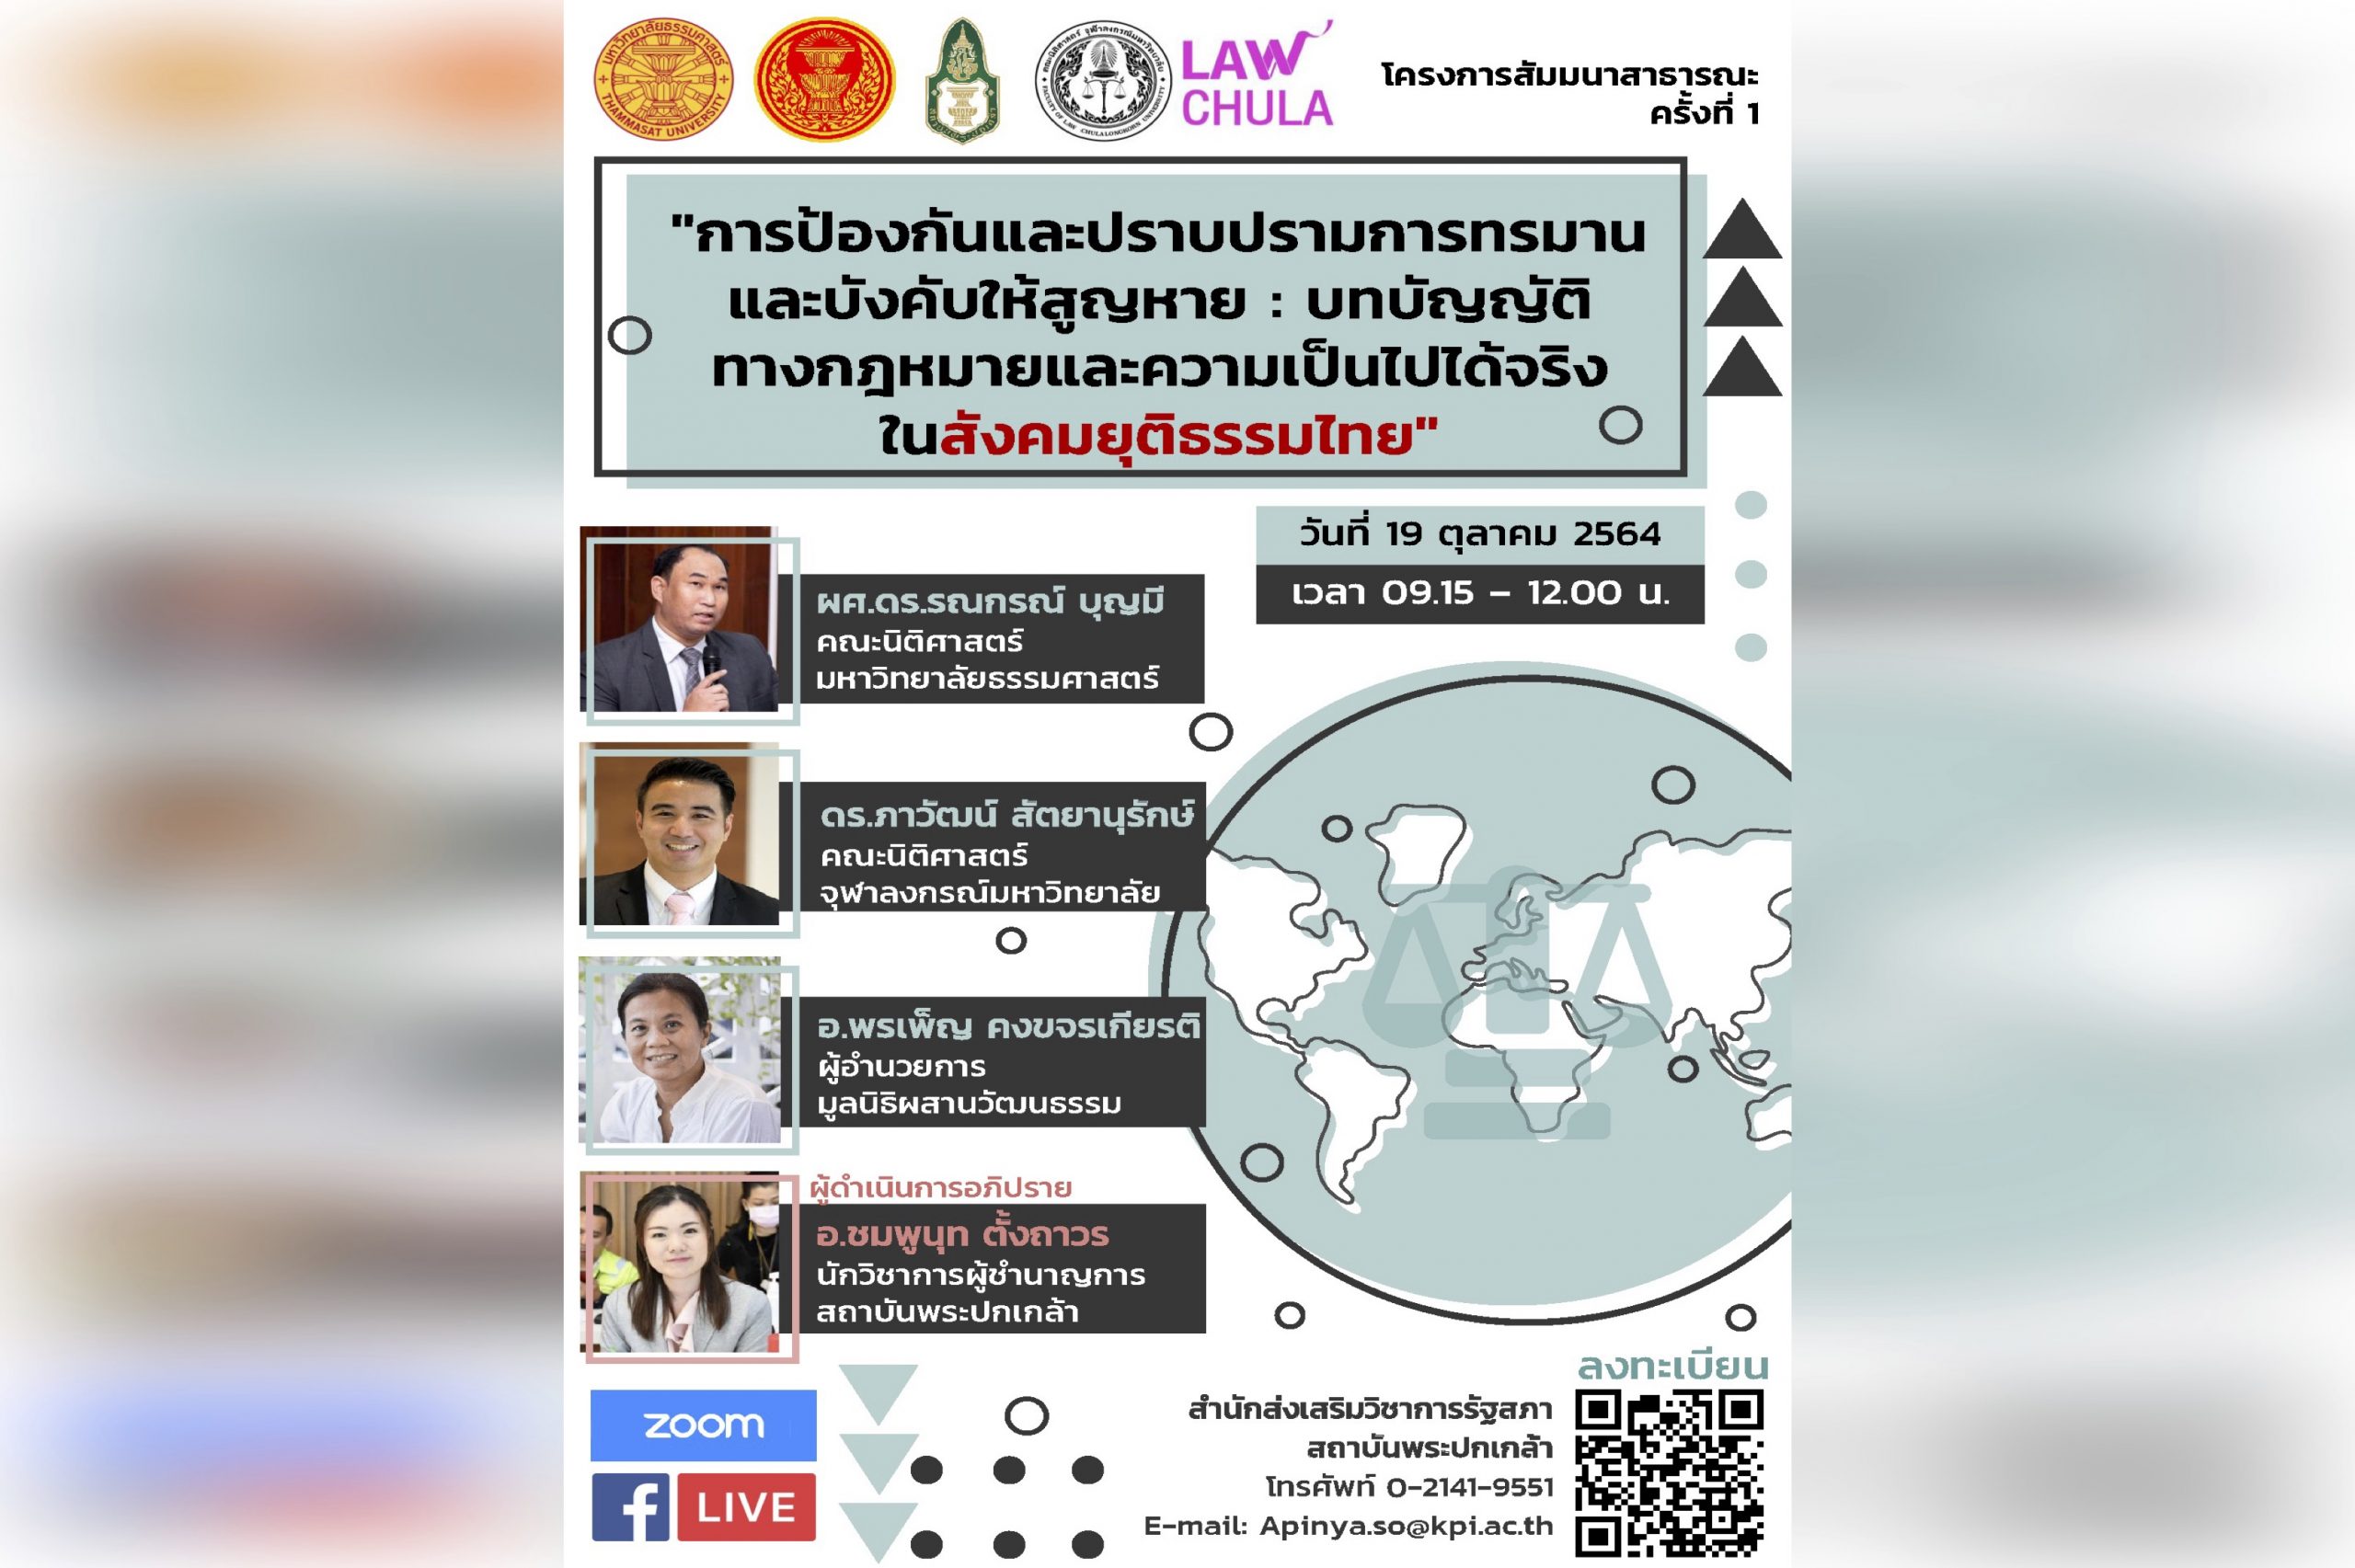 ขอเชิญชวนเข้าร่วมงานสัมมนาสาธารณะ ครั้งที่ 1 เรื่อง “การป้องกันและปราบปรามการทรมานและบังคับให้สูญหาย : บทบัญญัติทางกฎหมายและความเป็นไปได้จริงในสังคมยุติธรรมไทย”